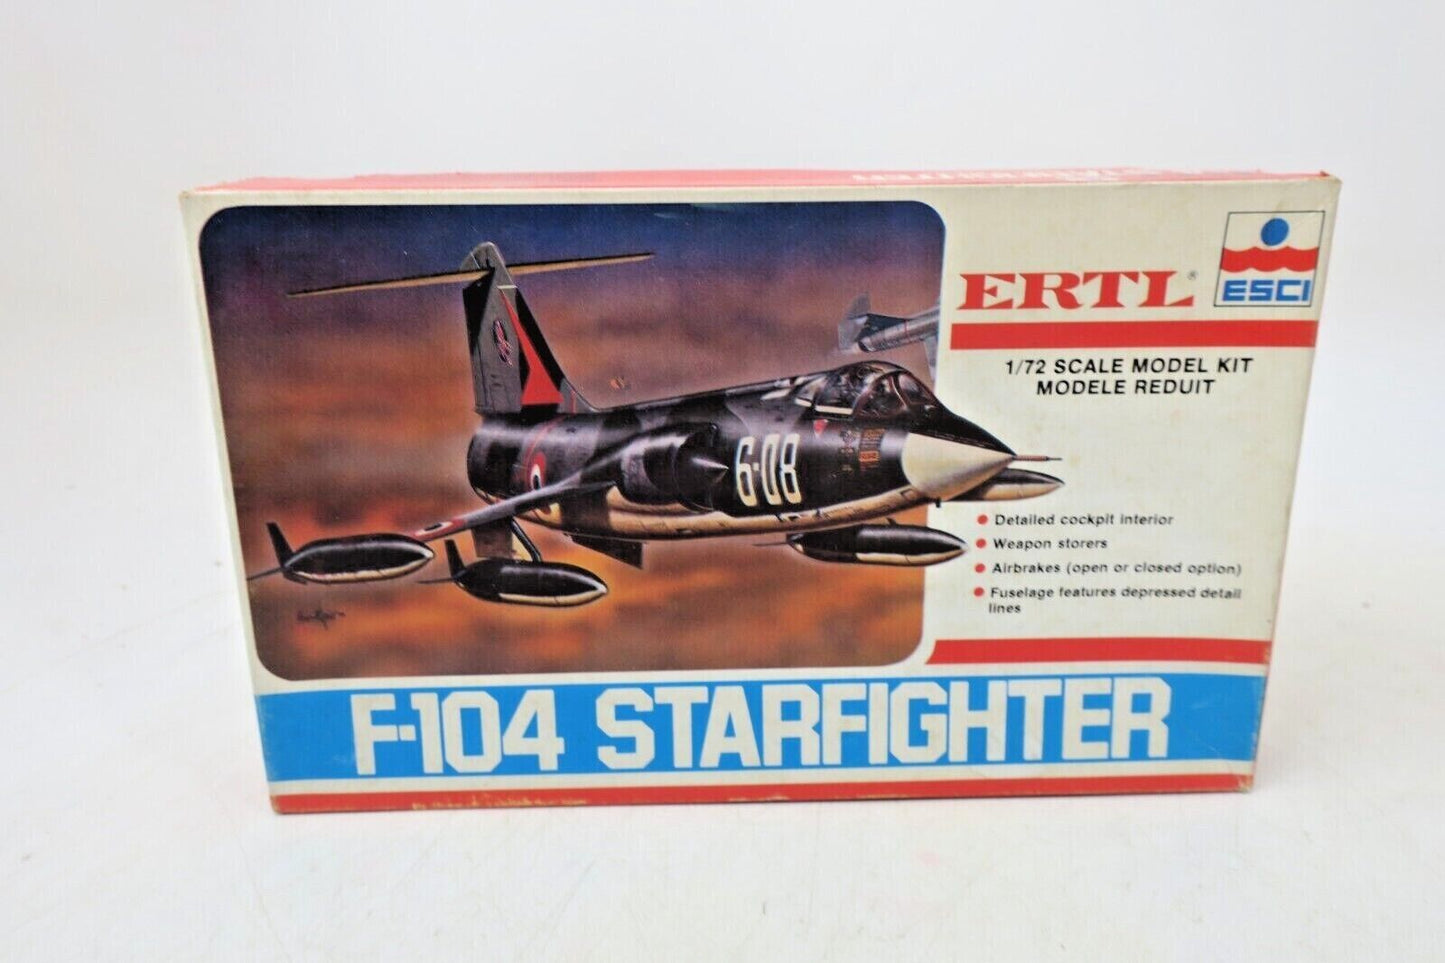 VINTAGE ERTL ESCI F-104 STARFIGHTER 1:72 MODEL KIT # 8243